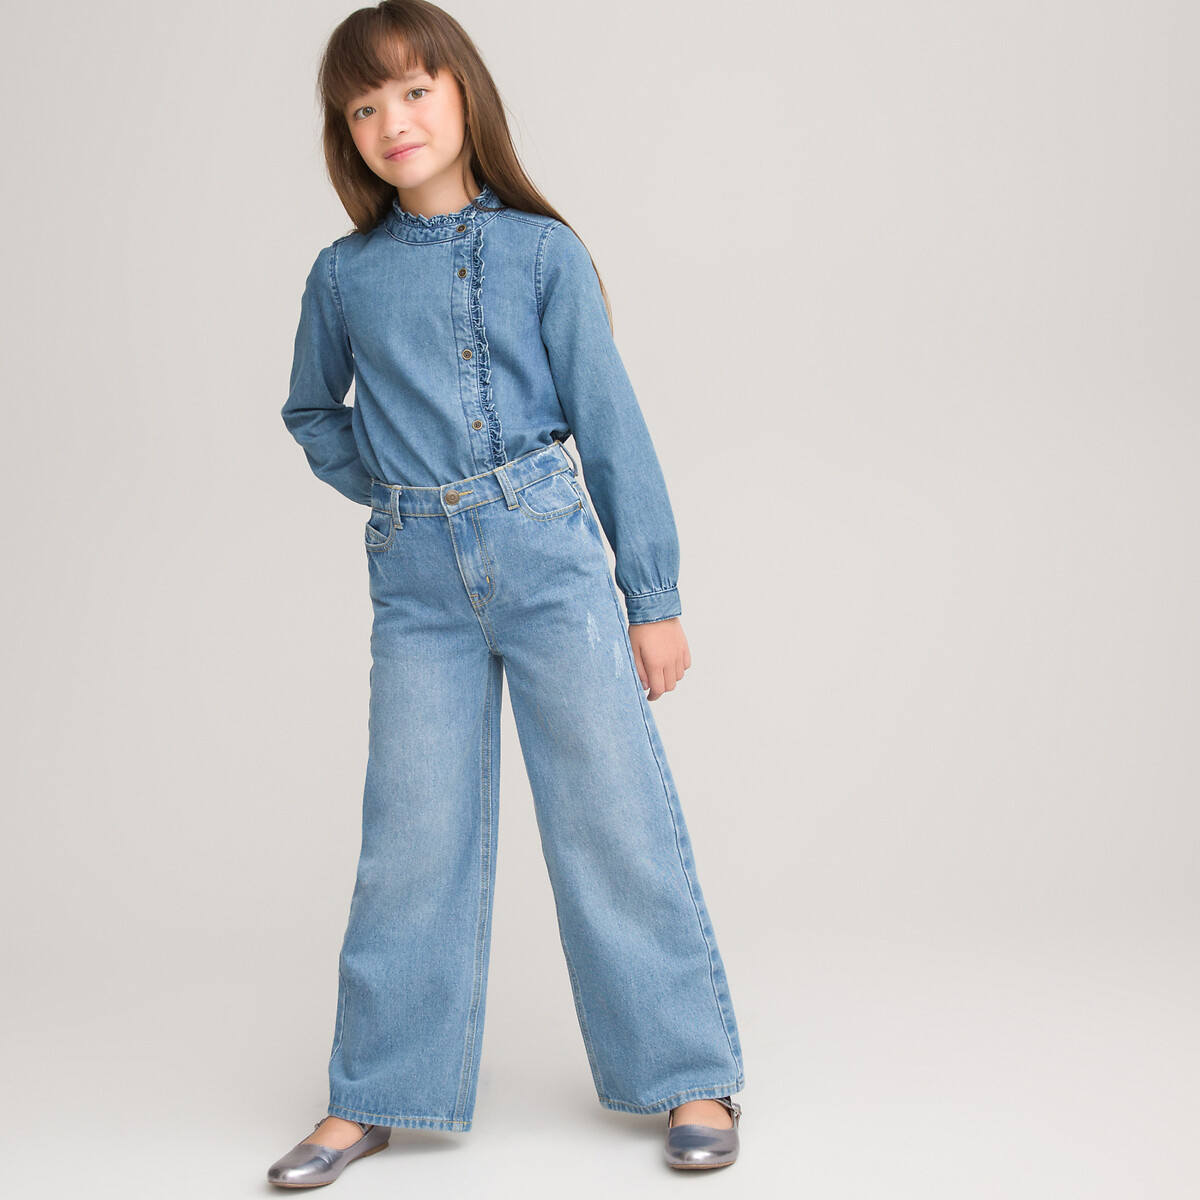 Блузка LaRedoute С воротником-стойкой джинсовая 3-12 лет 3 года - 94 см синий, размер 3 года - 94 см